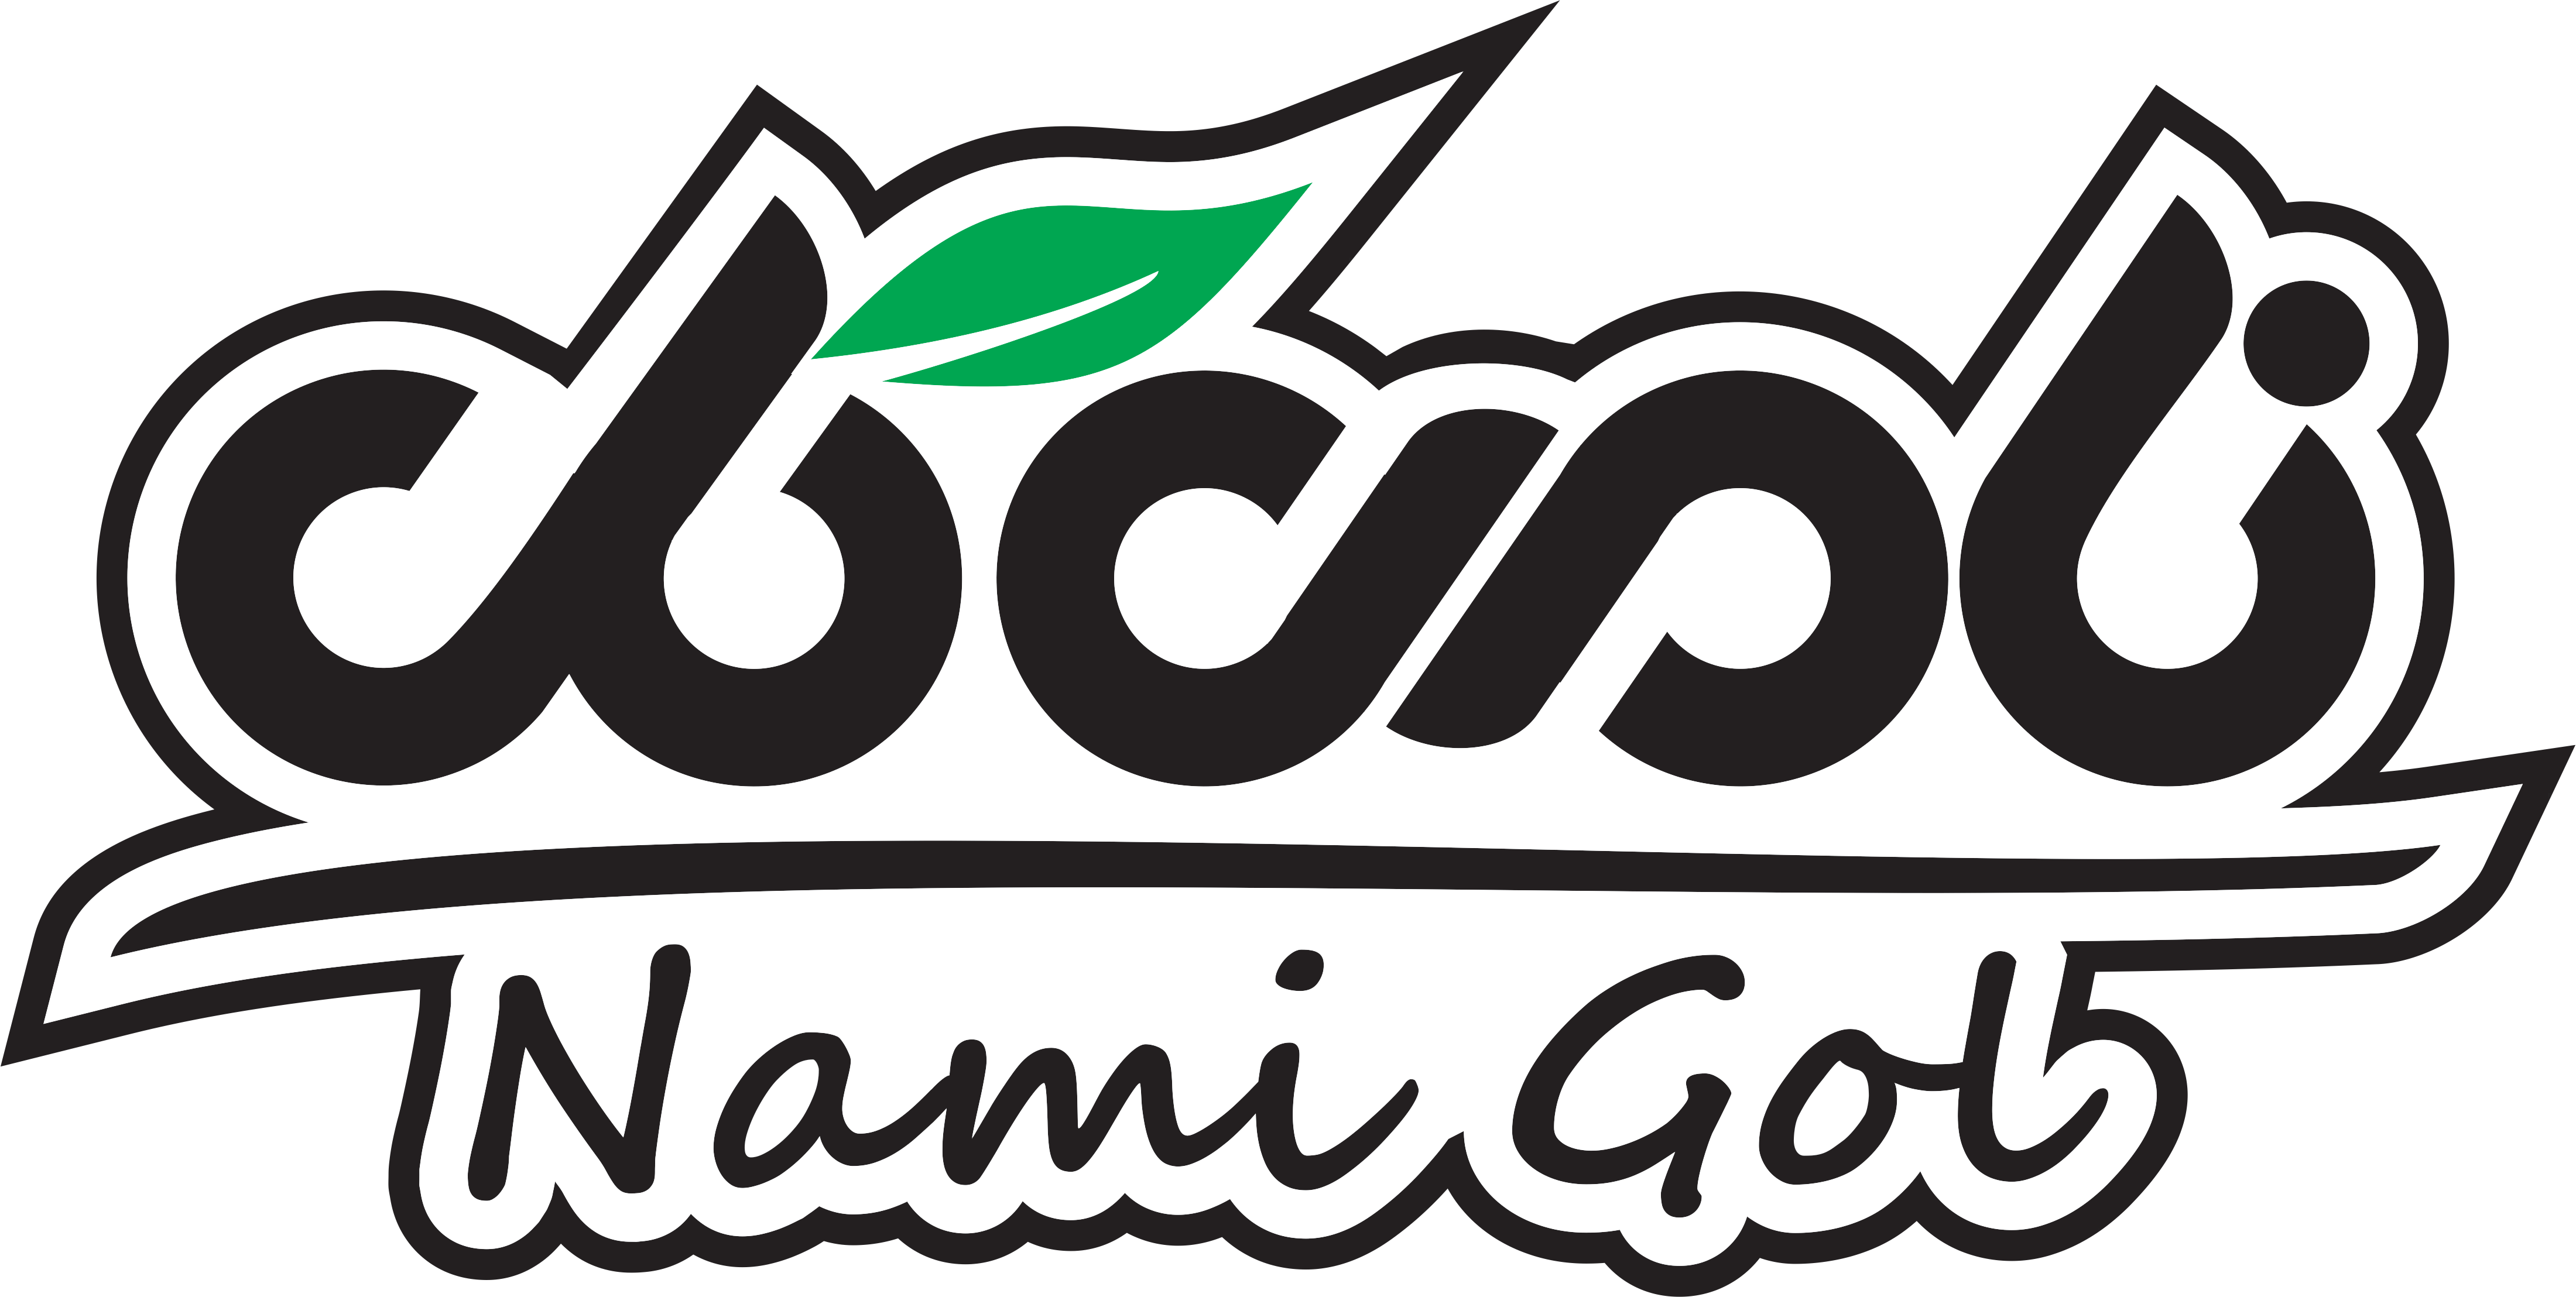 عطاری علی بابا | بزرگترین مرجع محصولات گیاهی در ایران